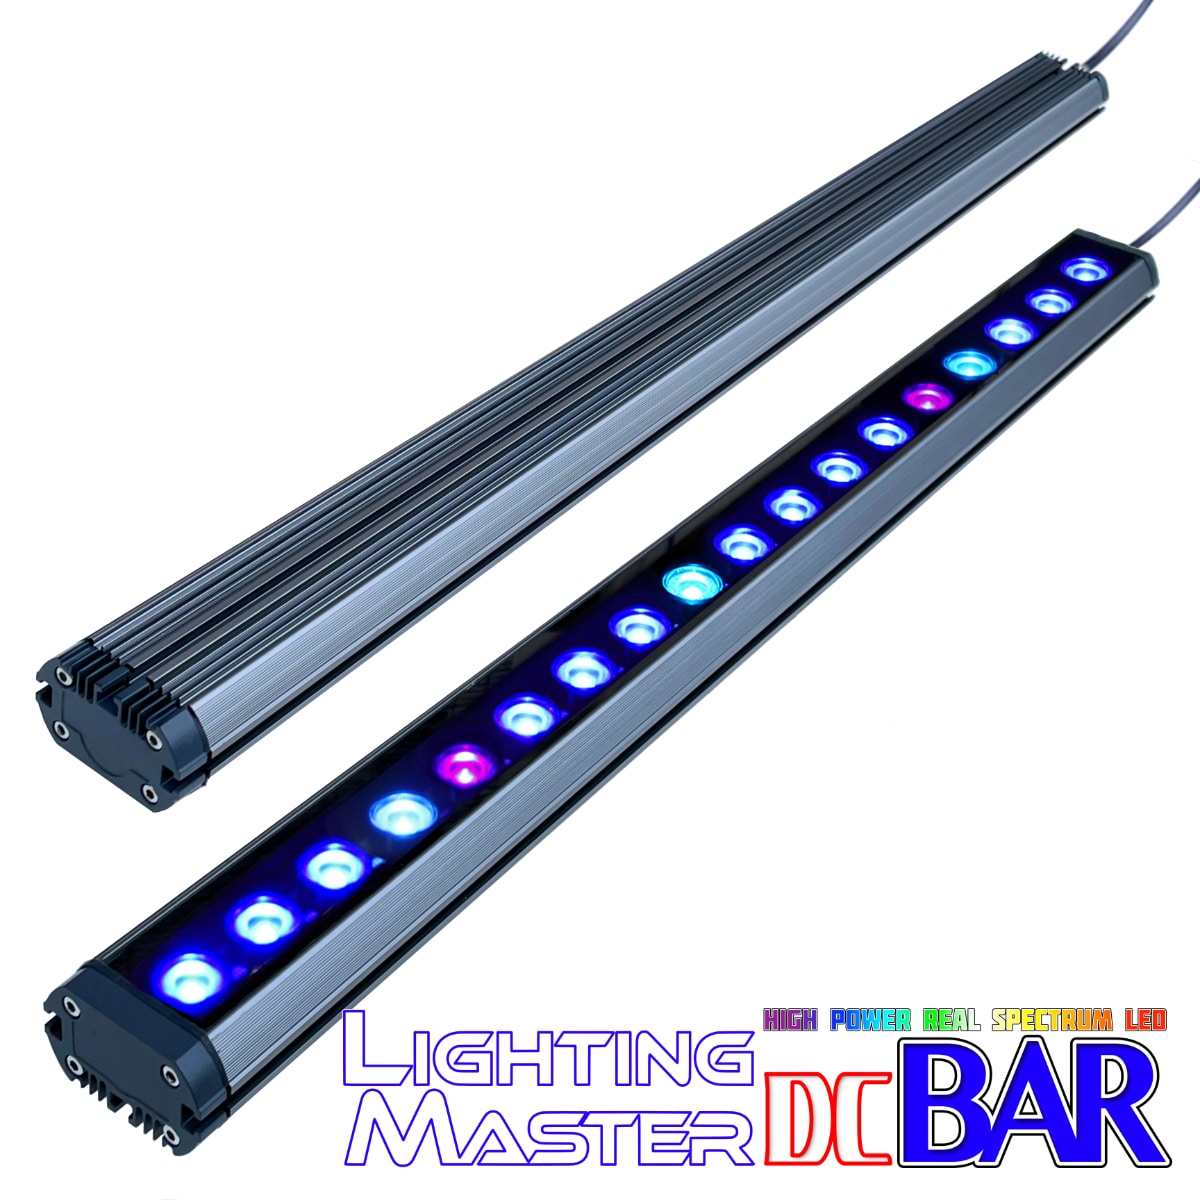 50,000K マルチスペクトル 60〜90cm水槽対応 超高輝度特殊デュアルチップLED搭載ランプ Lighting Master DC Bar【サファイアブルー】本体色:グレーメタリック